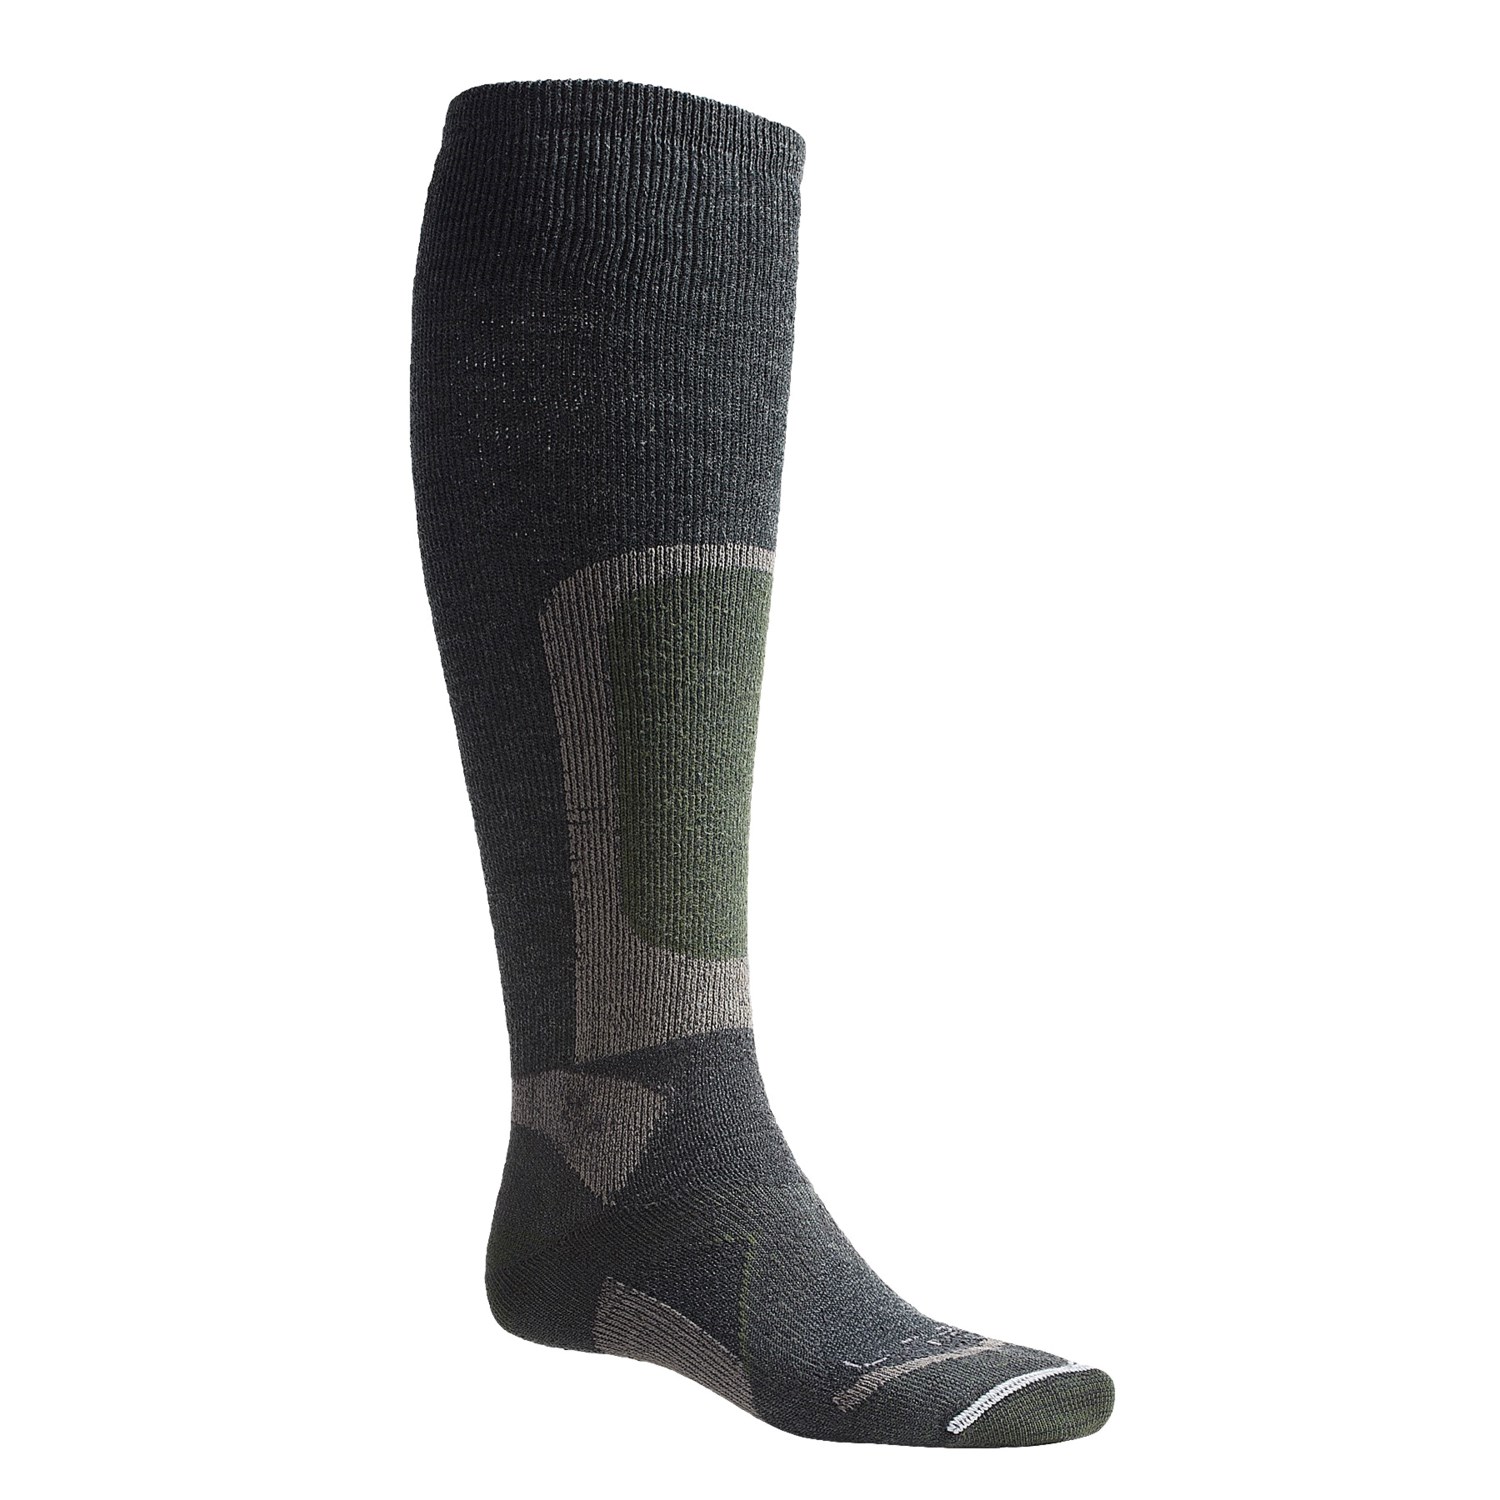 Lorpen Stalker Hunting Socks (For Men) 4352H - Save 43%